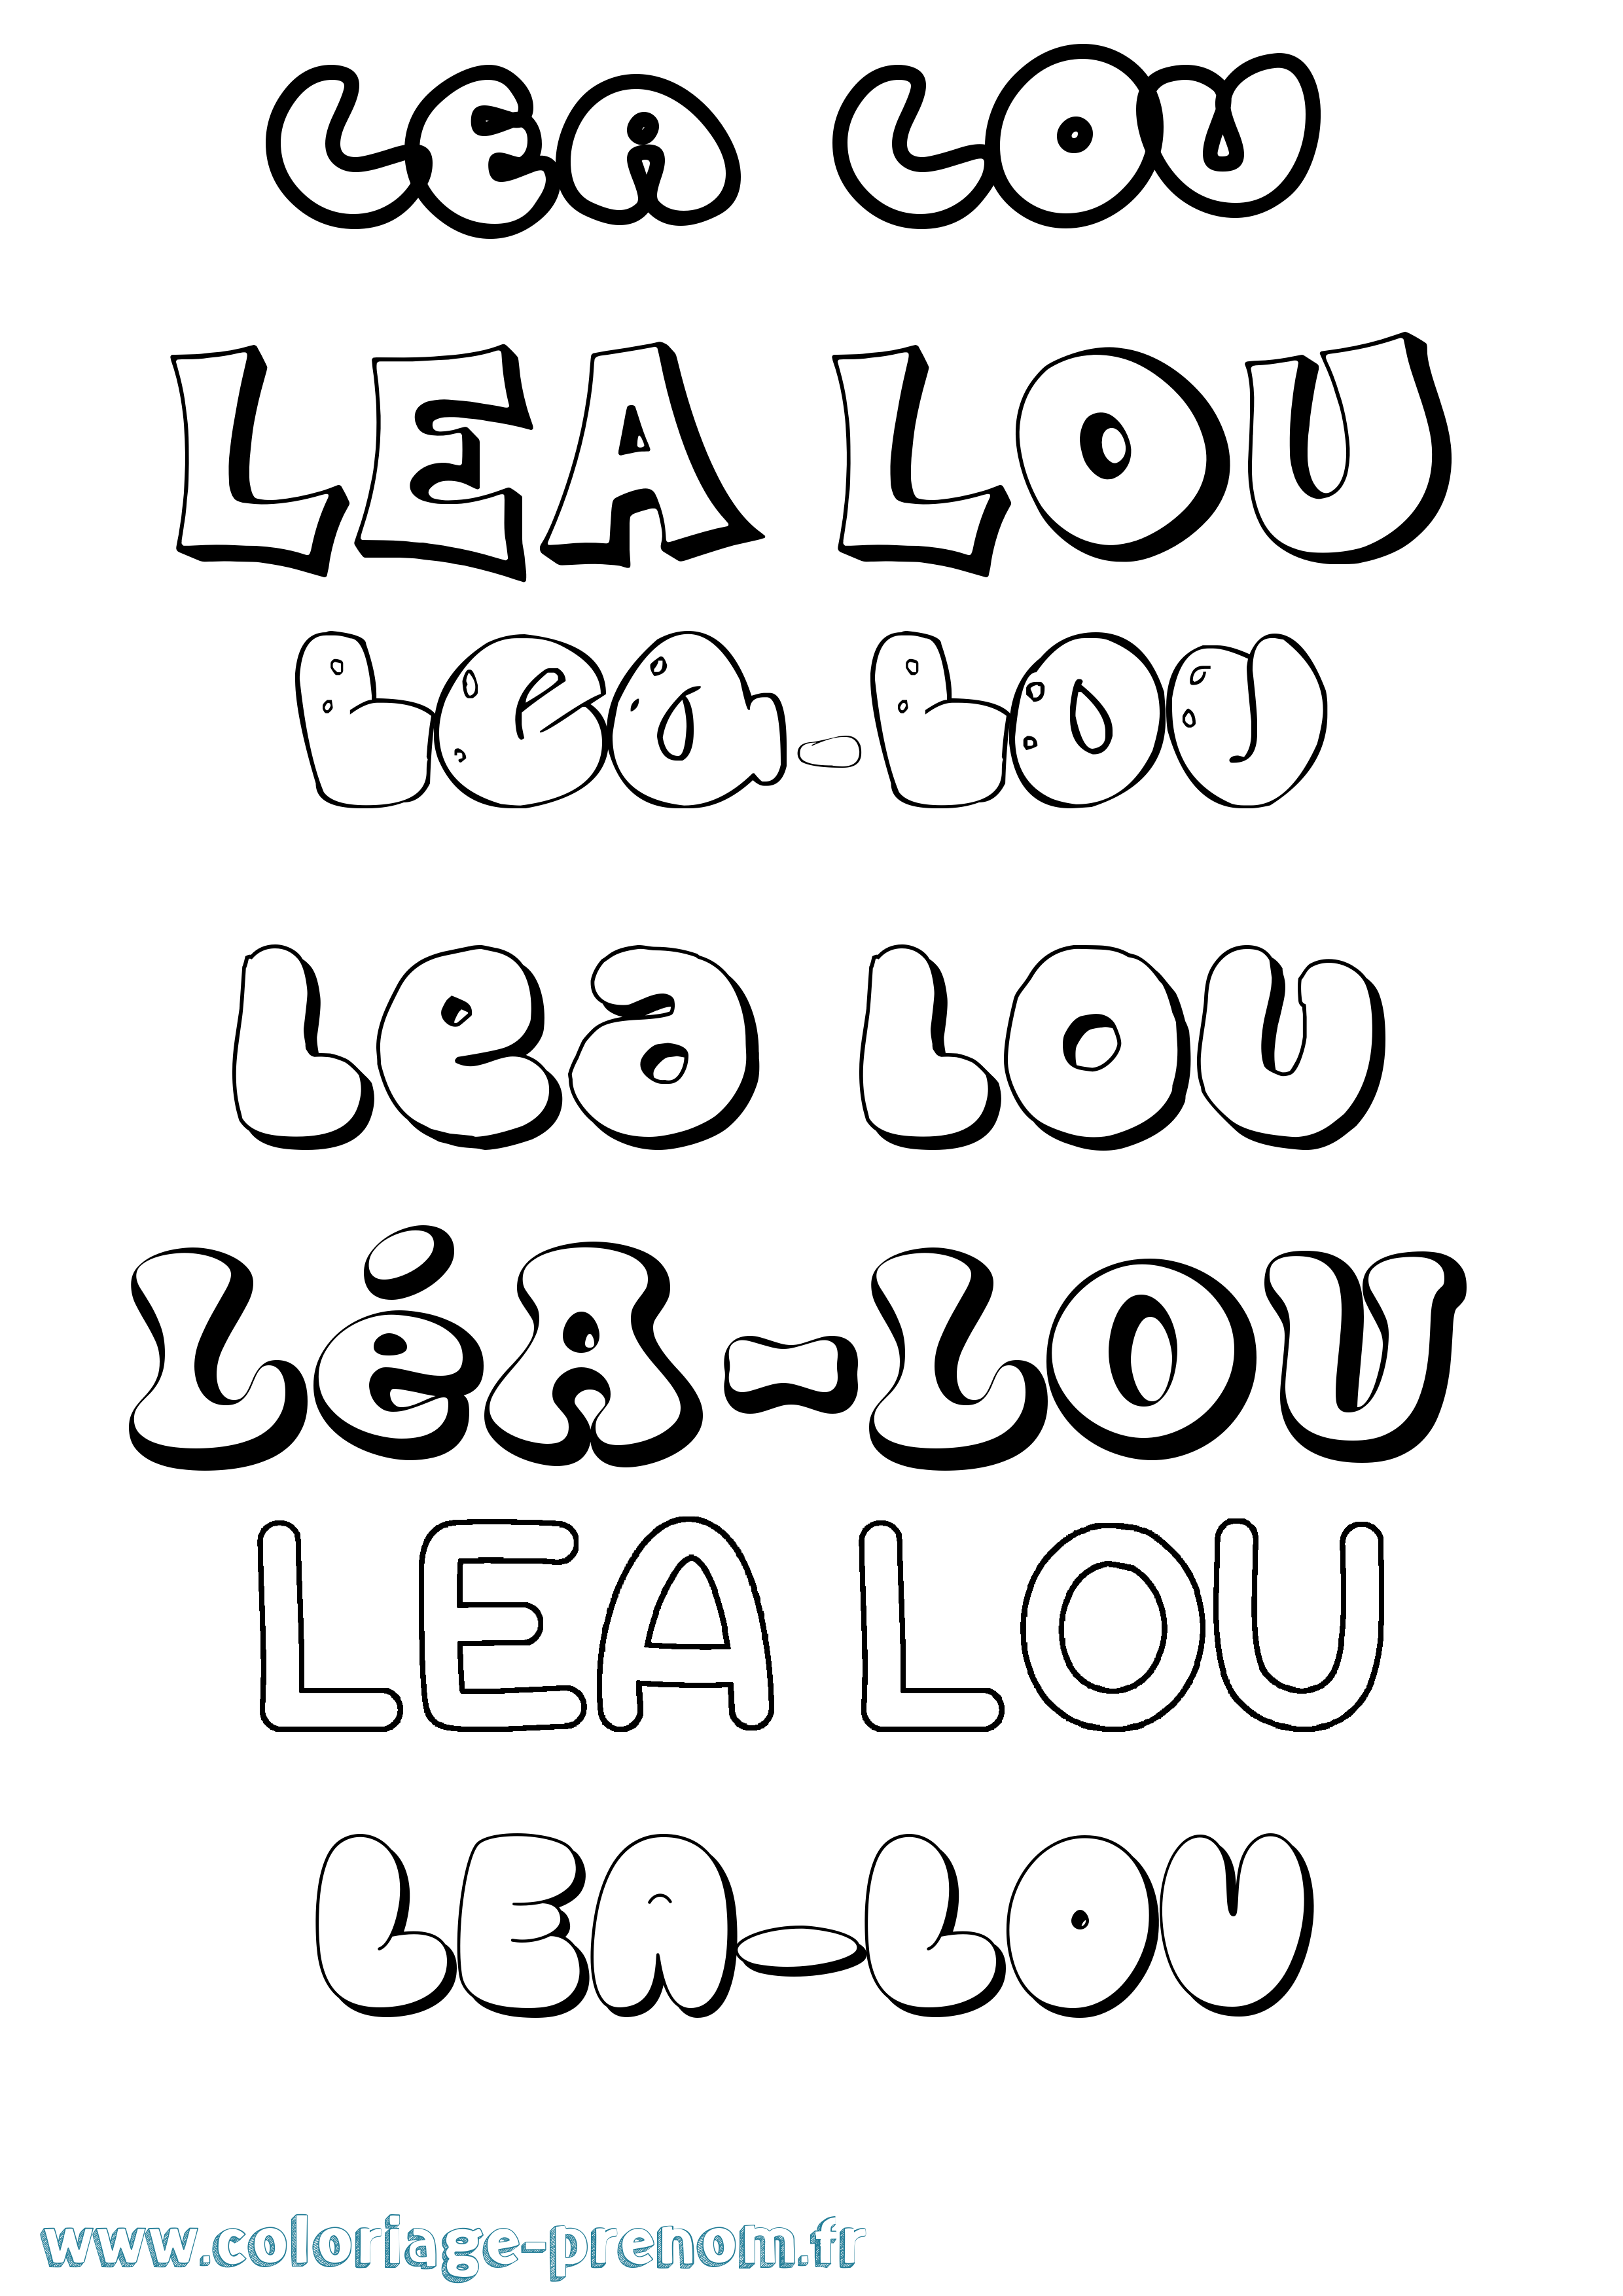 Coloriage prénom Léa-Lou Bubble